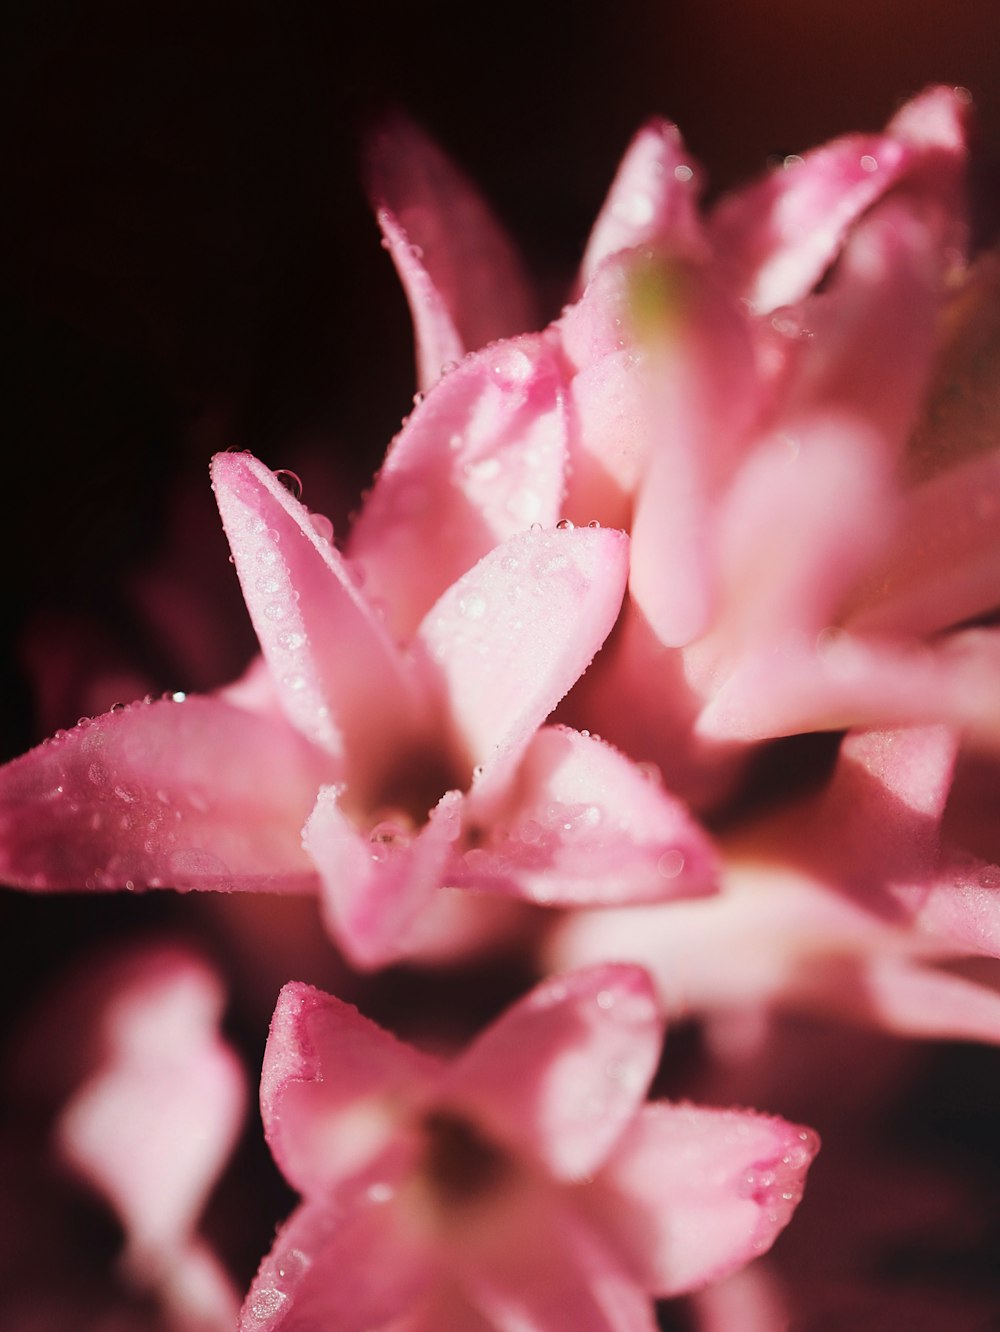 eine Nahaufnahme einer rosa Blume mit Wassertropfen darauf